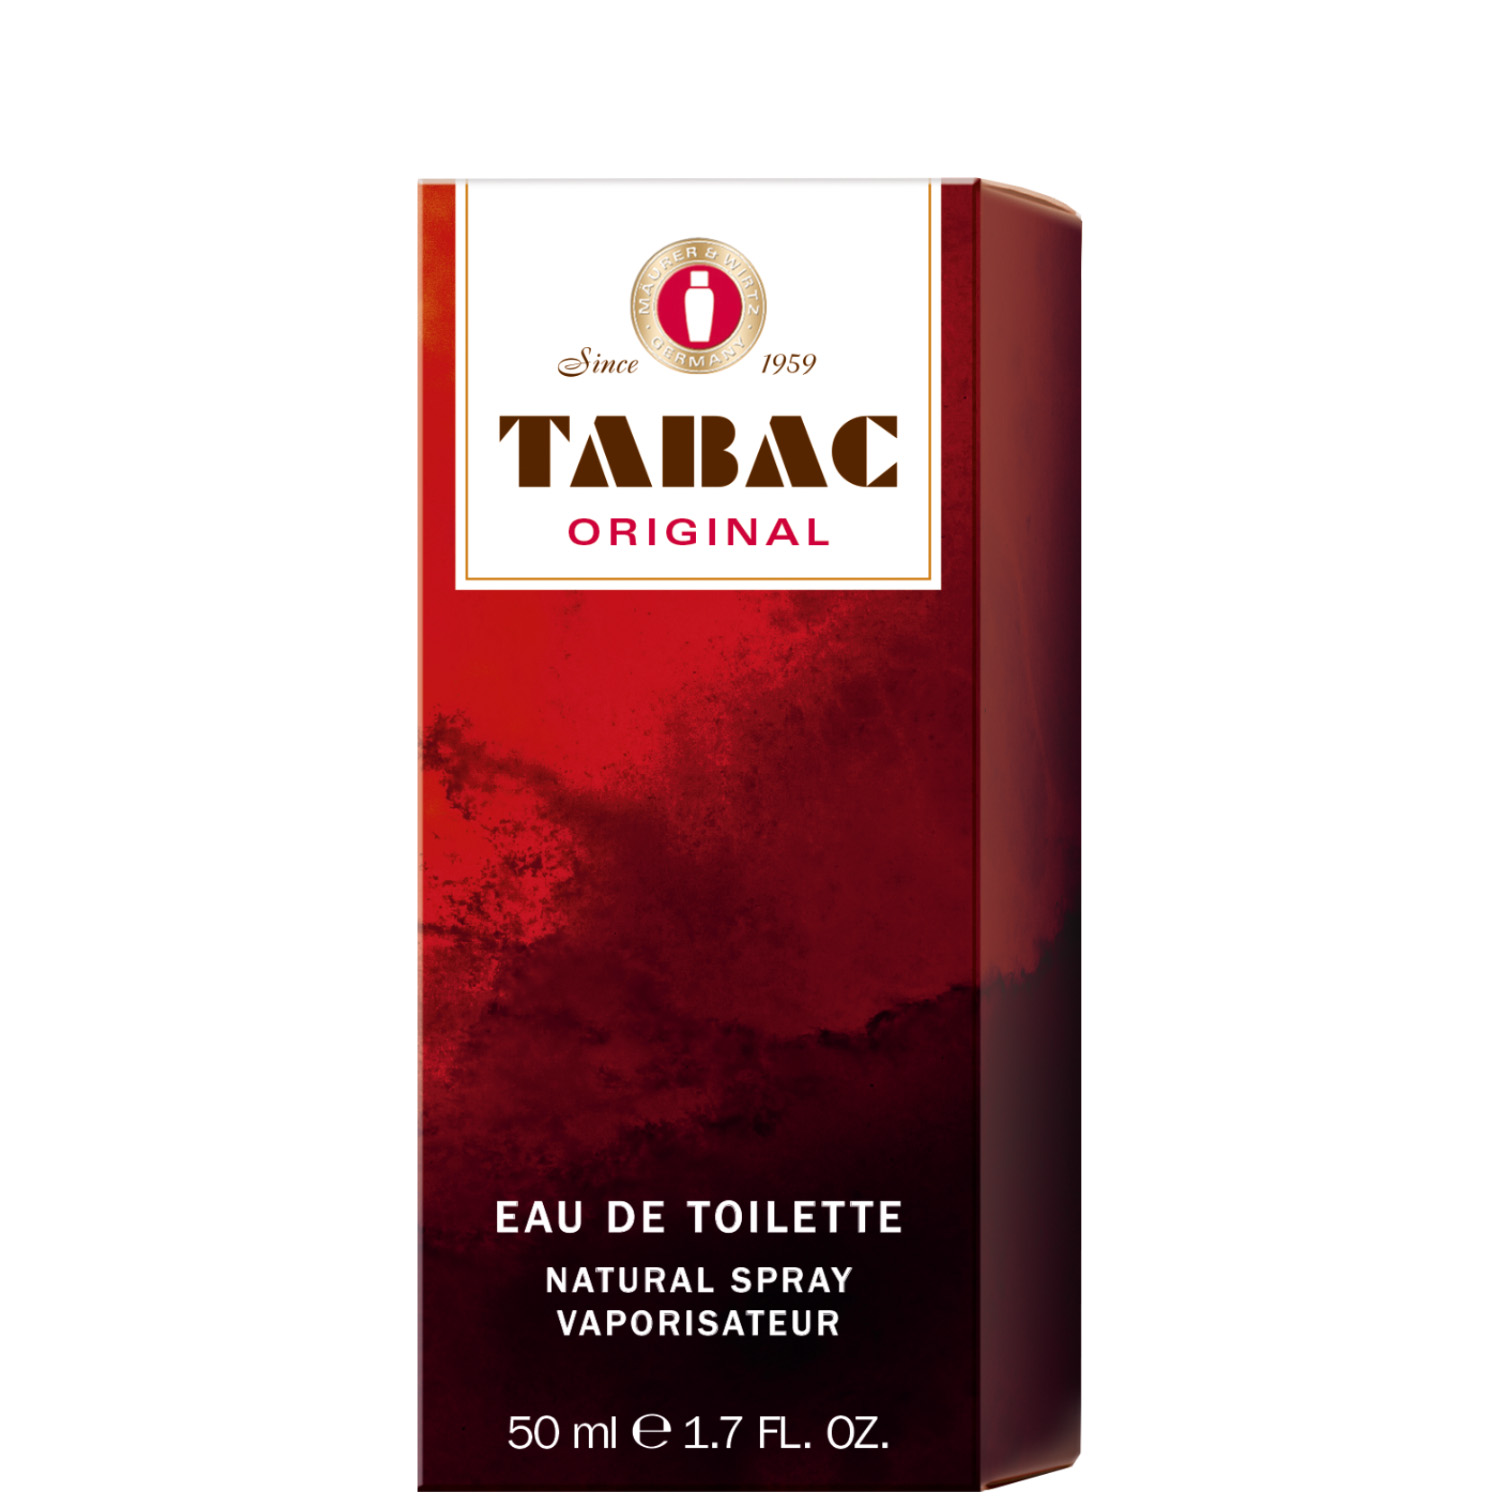 Tabac Original Eau de Toilette 50ml